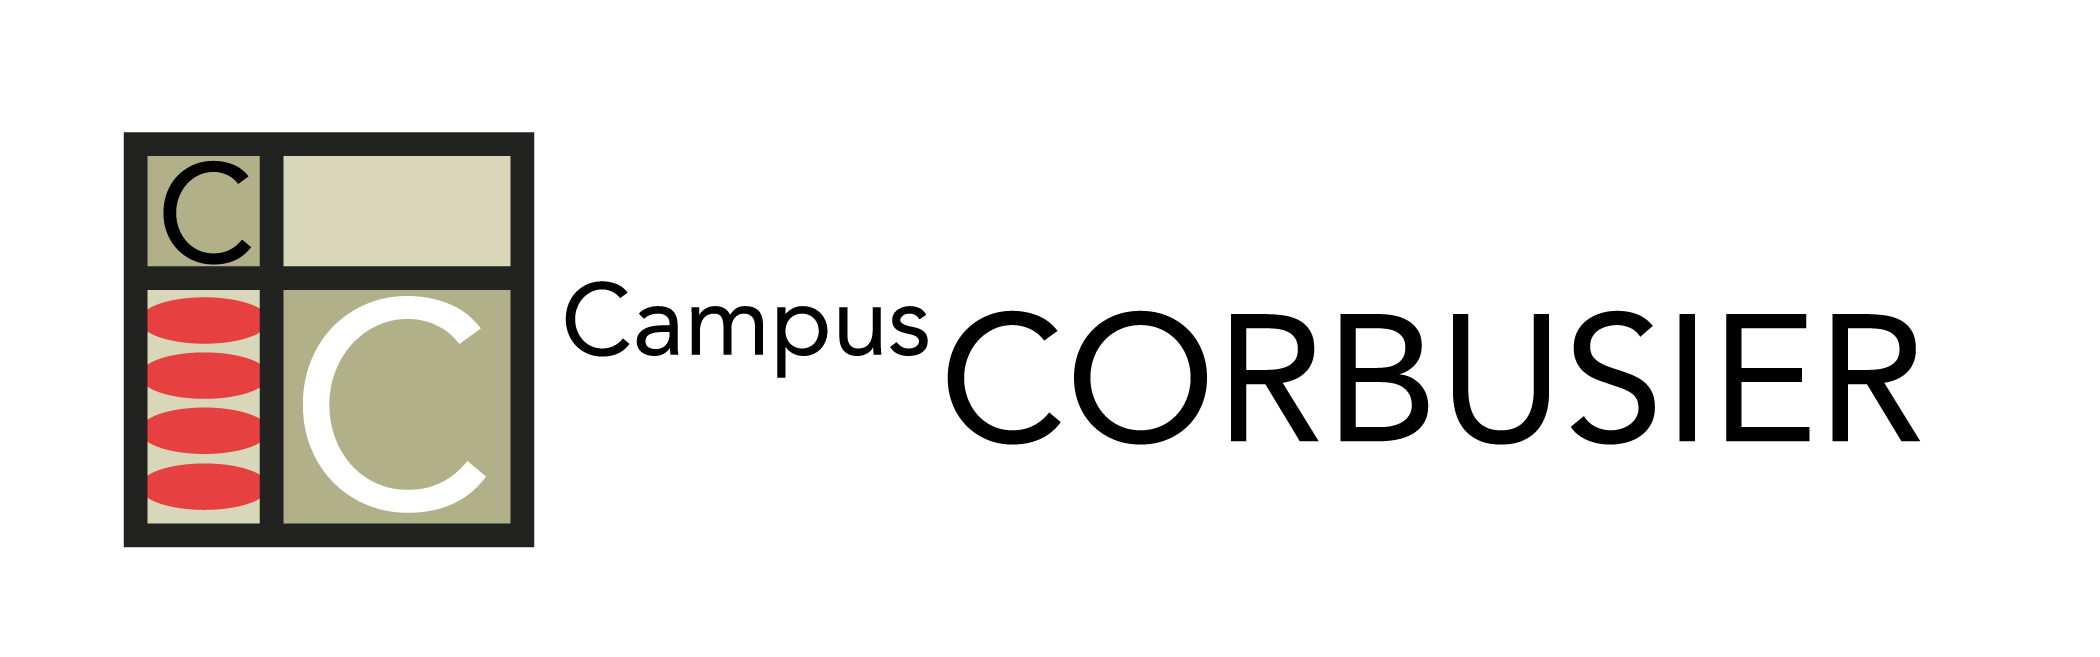 Campus Corbusier